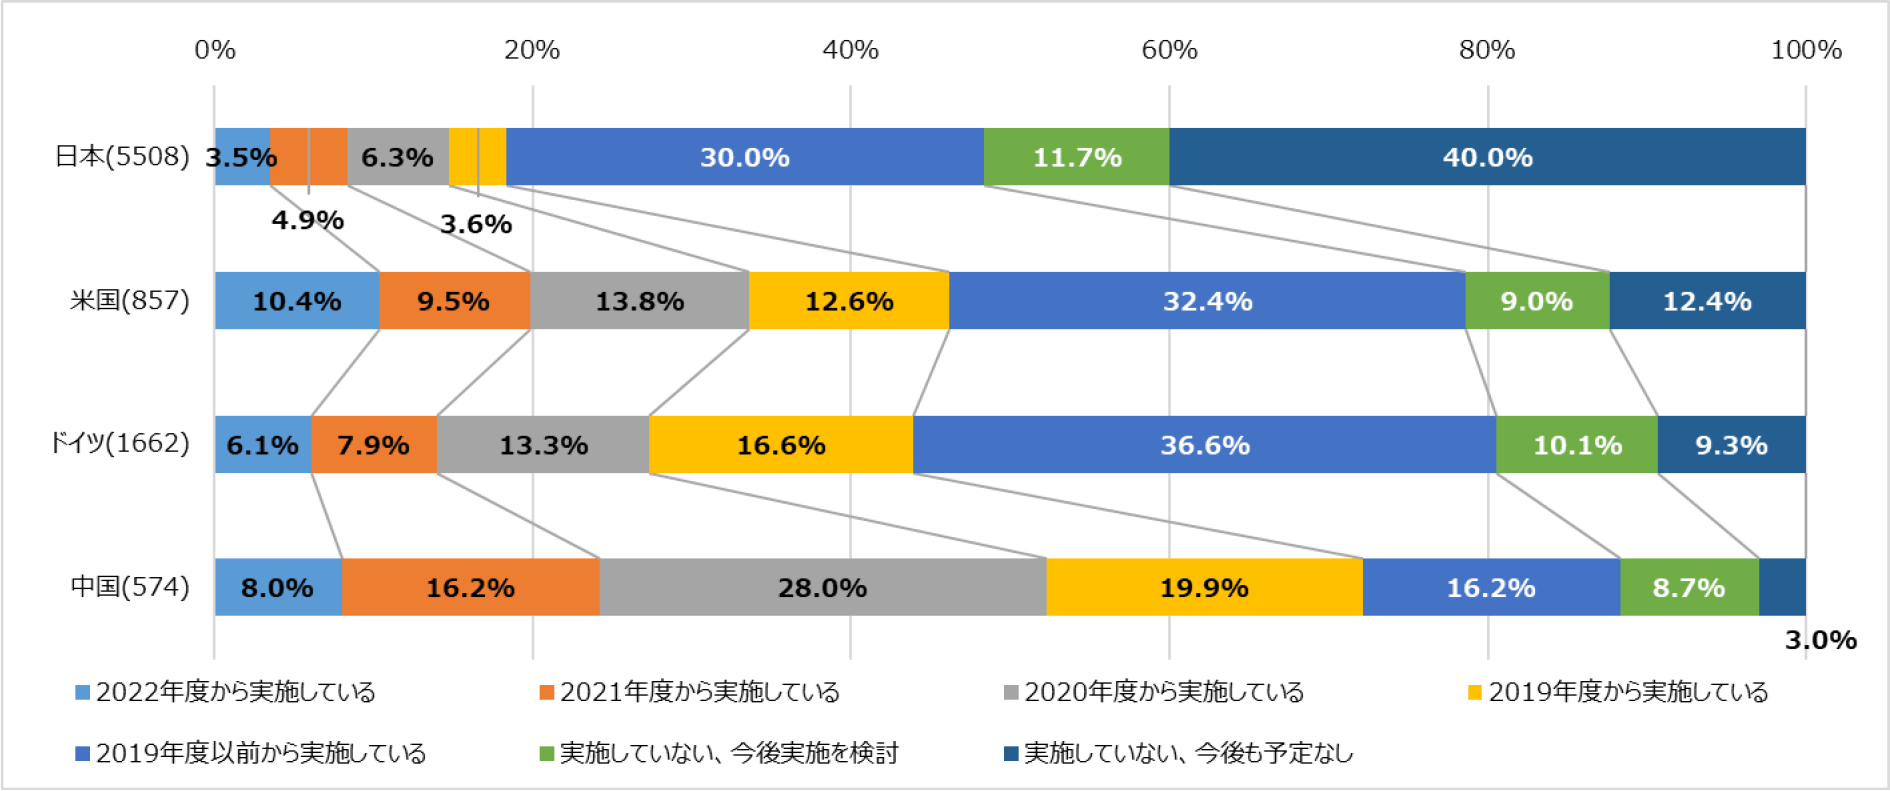 日本企業のDX化の取り組み状況と各国との比較のグラフ